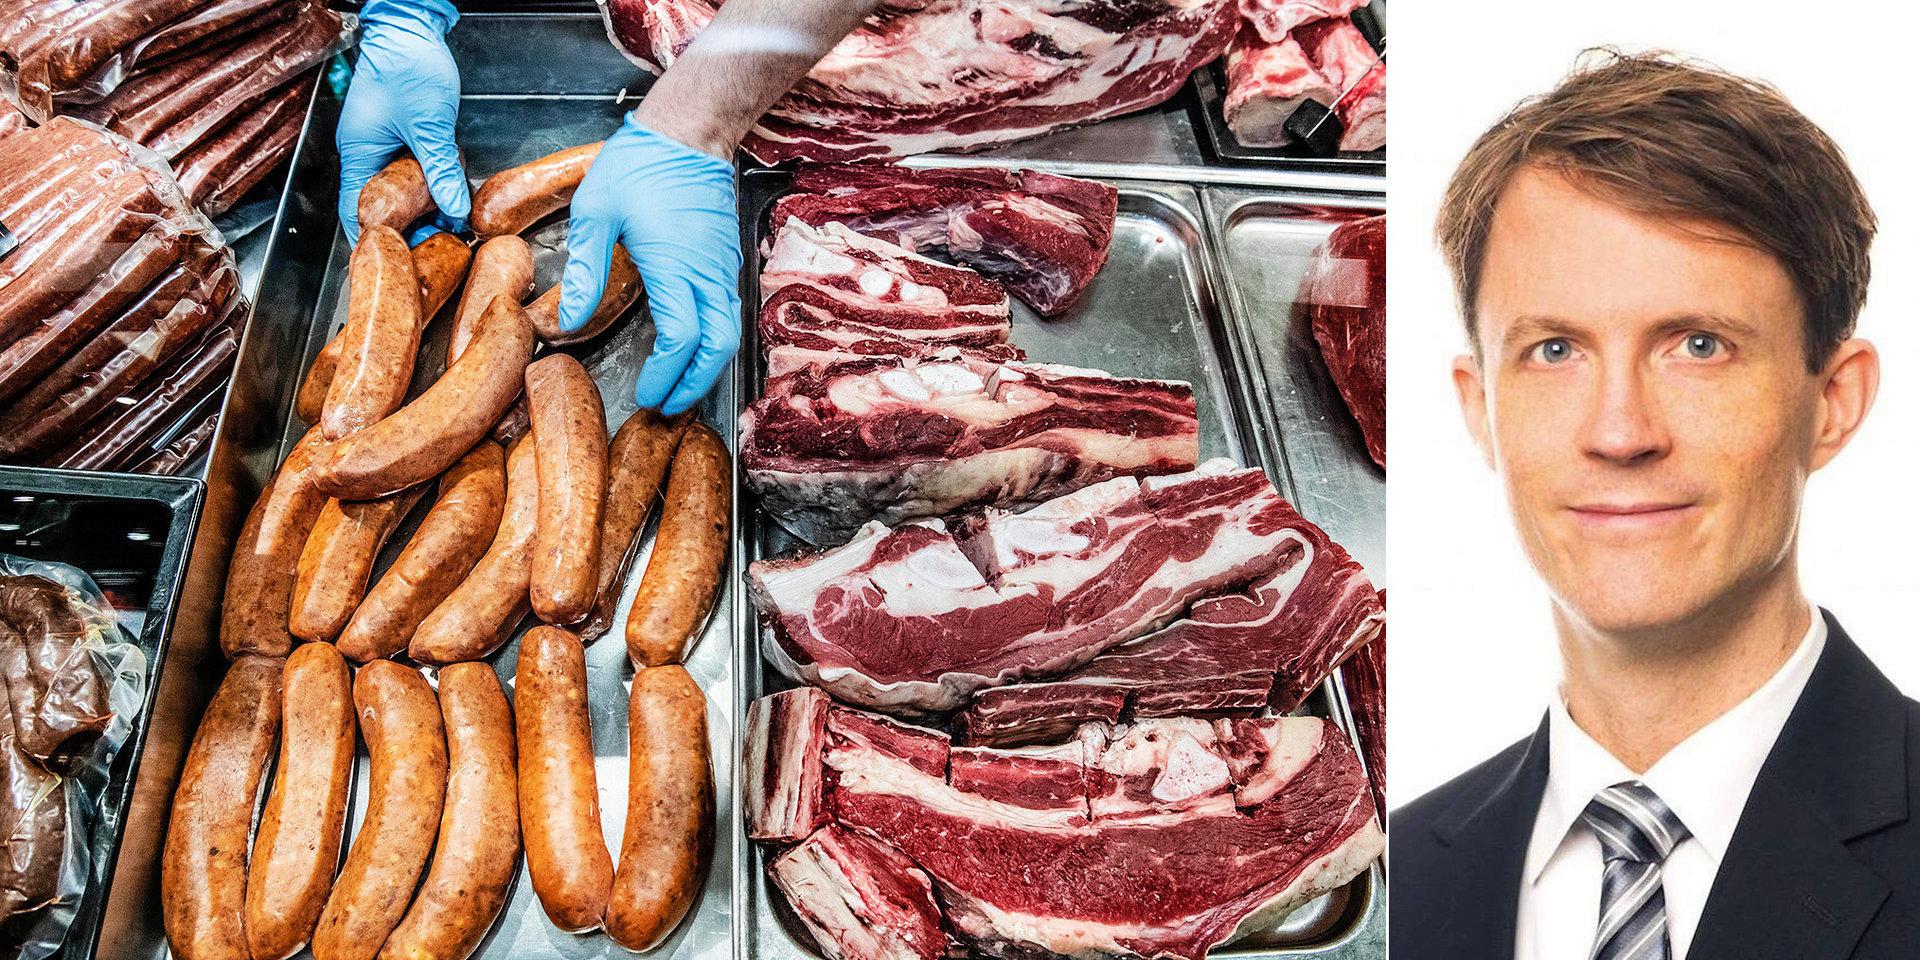 Ett ansvarsfullt agerande från Svenskt kött vore att informera sina konsumenter om risker med sina produkter, skriver David Stenholtz, Läkare för framtiden.